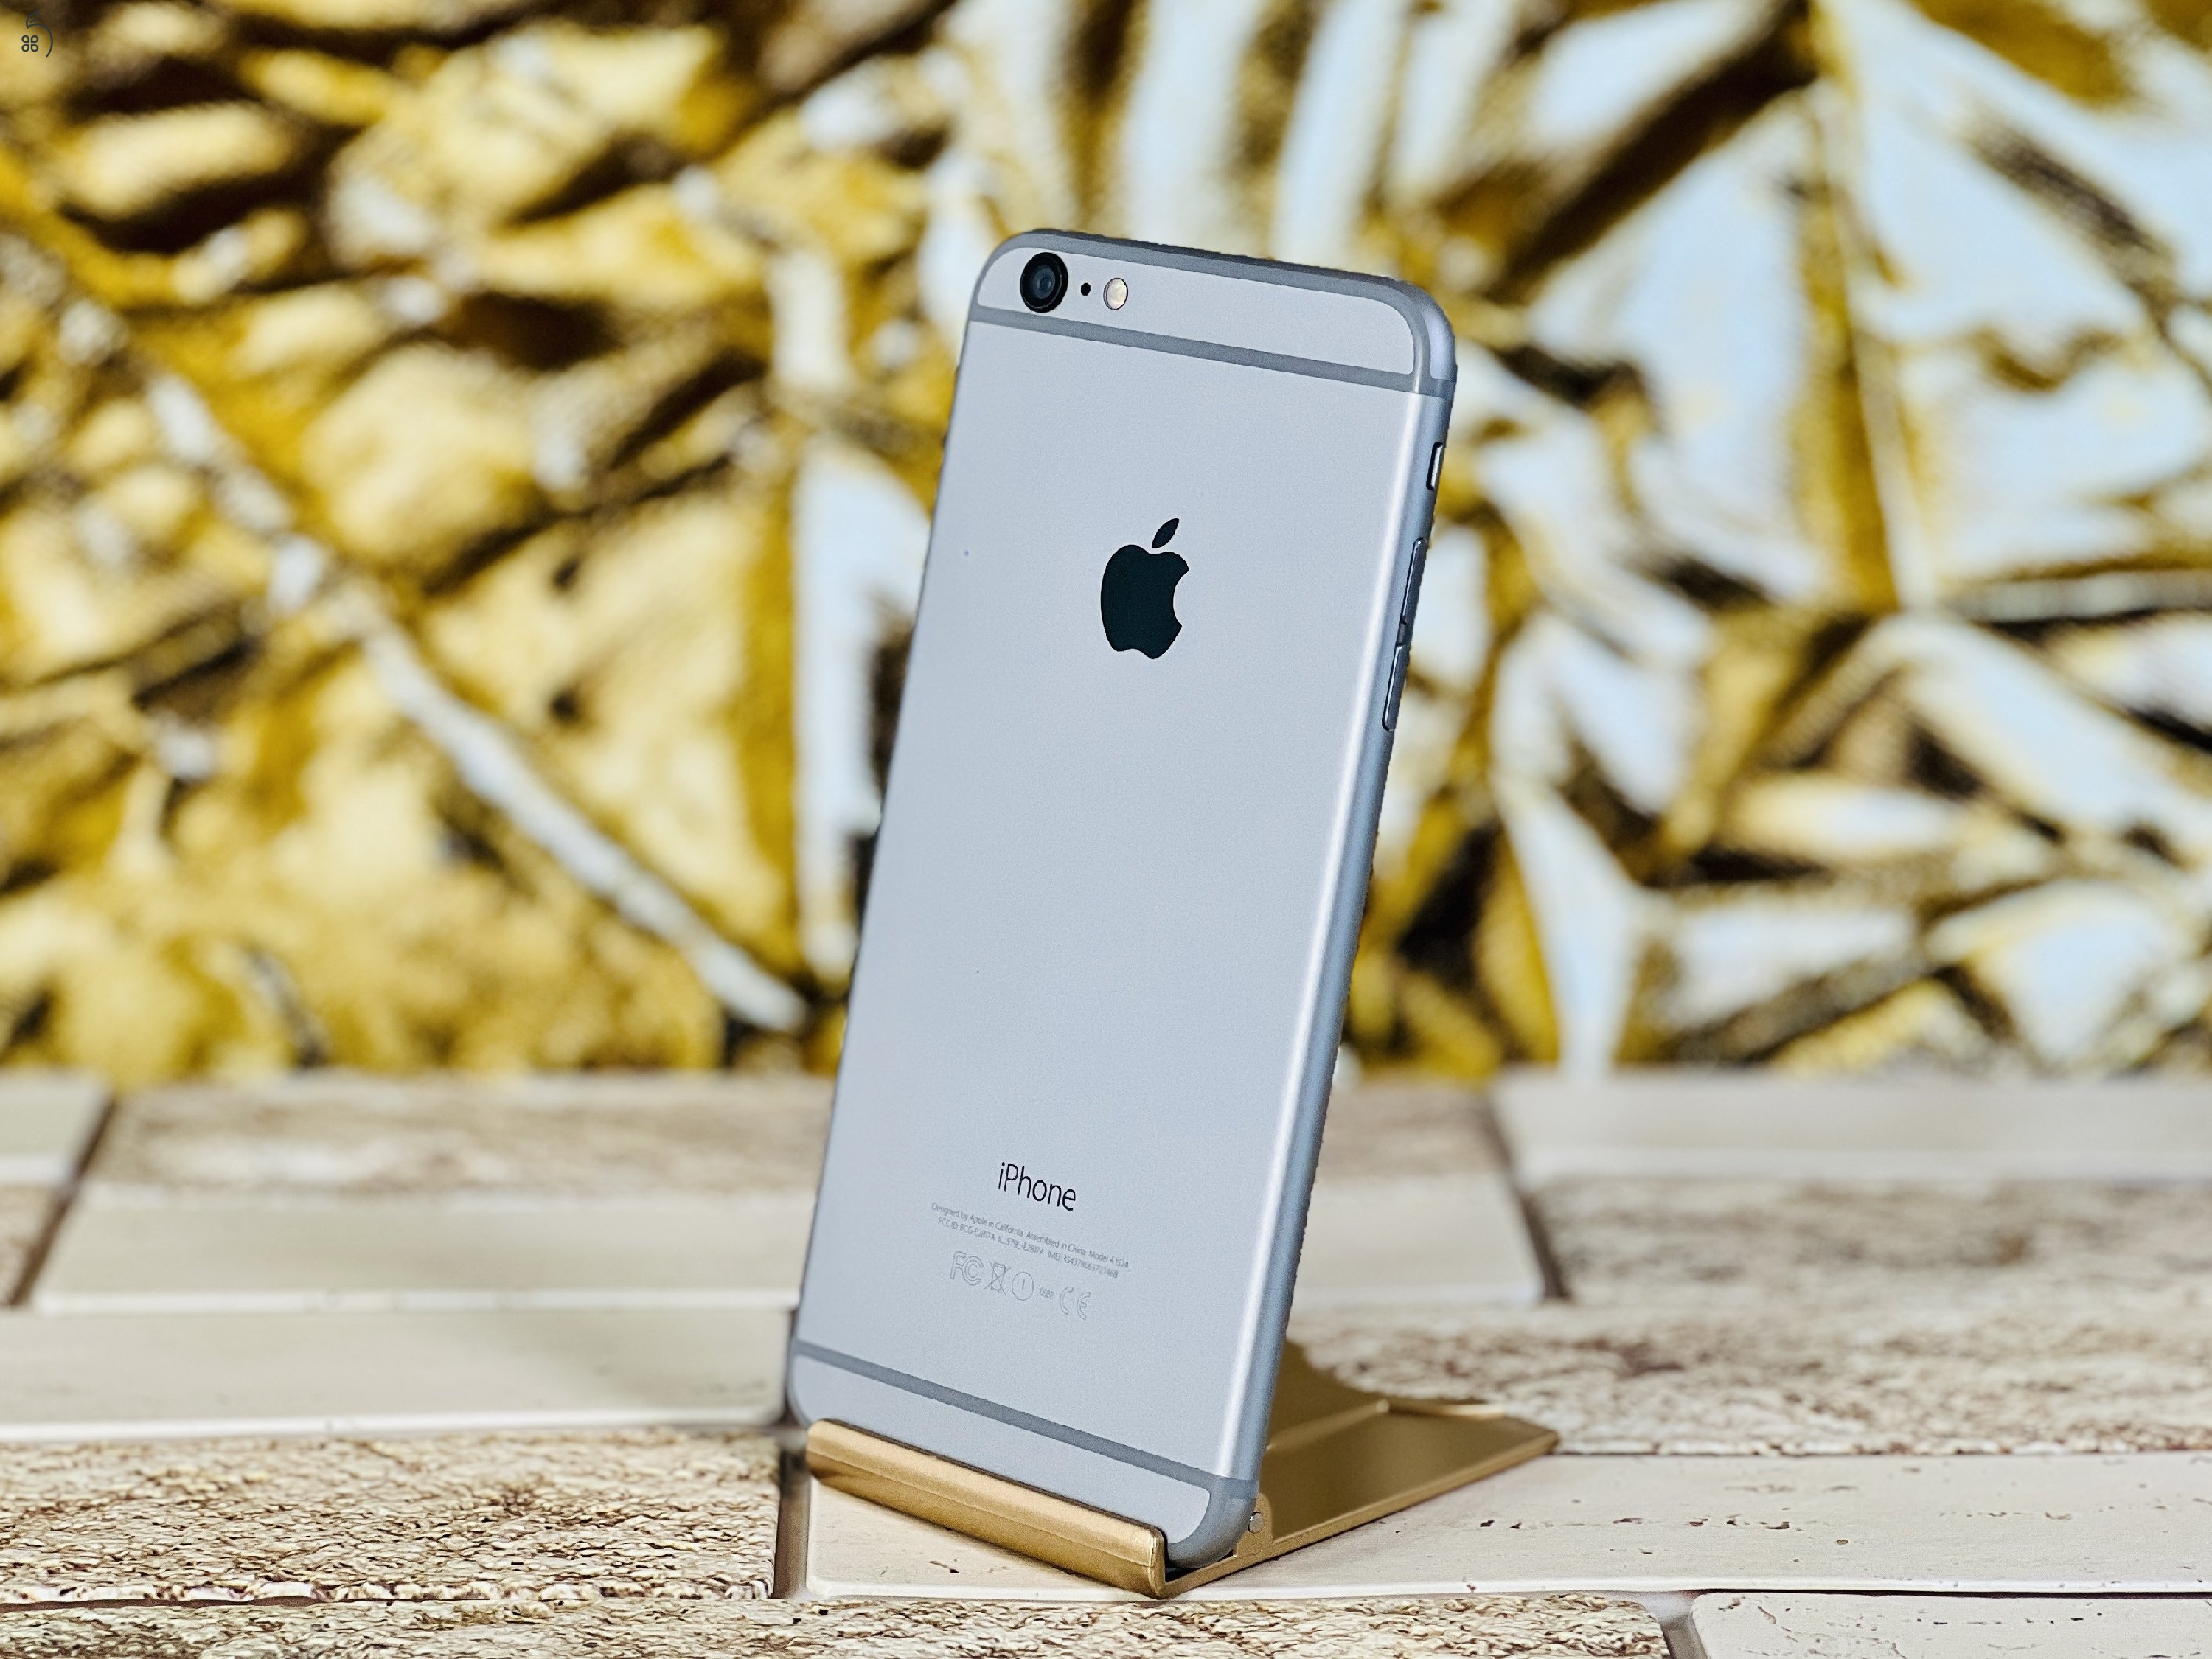 Eladó iPhone 6 Plus 16 GB Space Gray szép állapotú - R4414